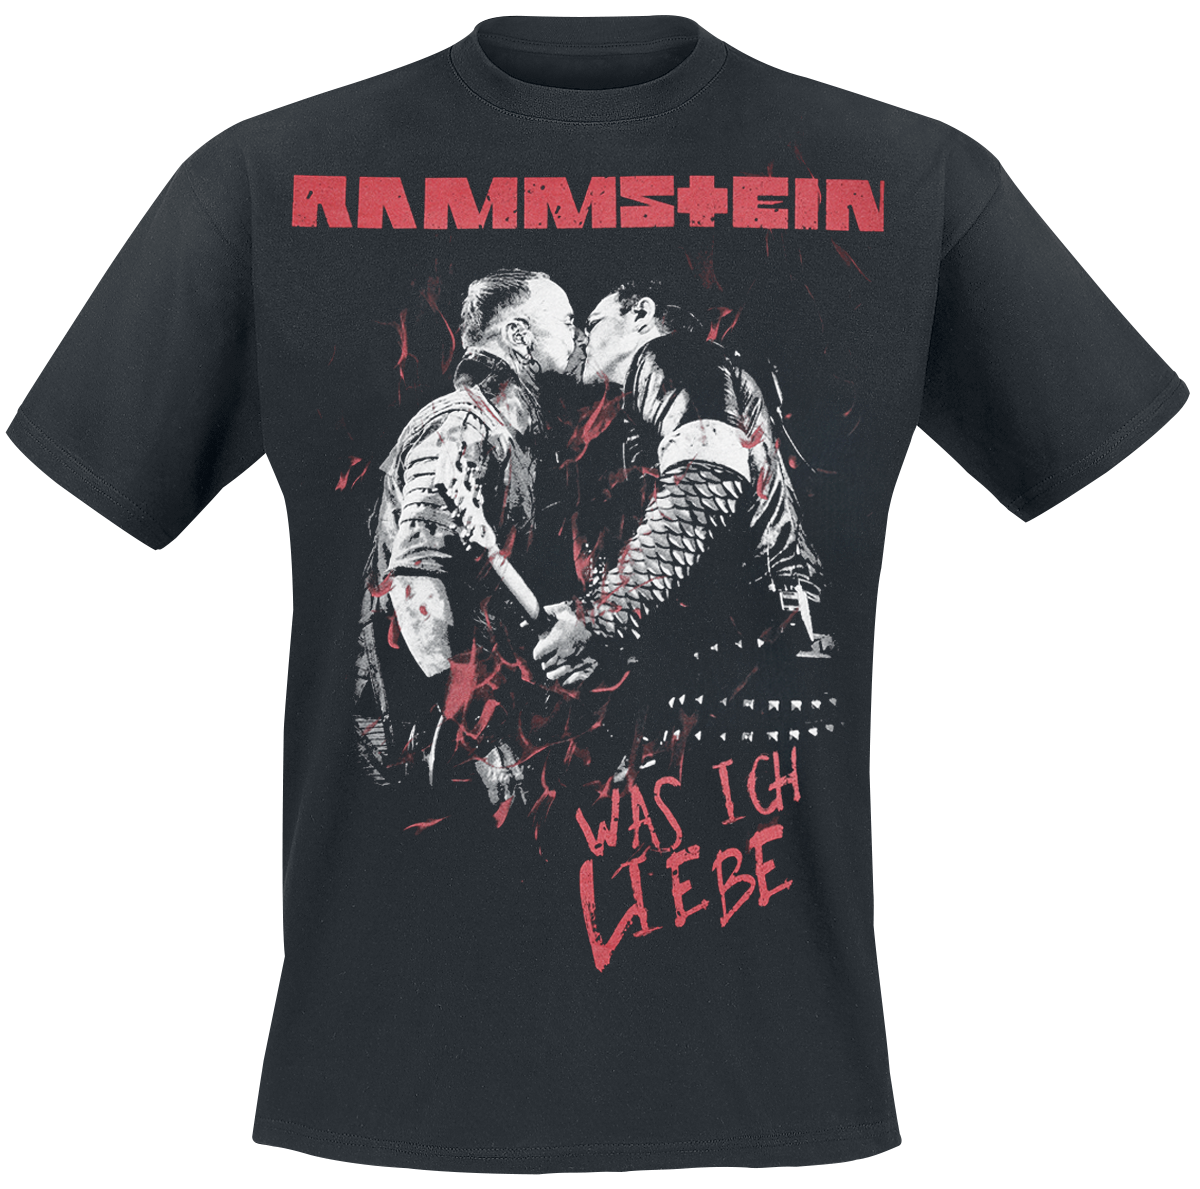 Rammstein - Was Ich Liebe - T-Shirt - schwarz